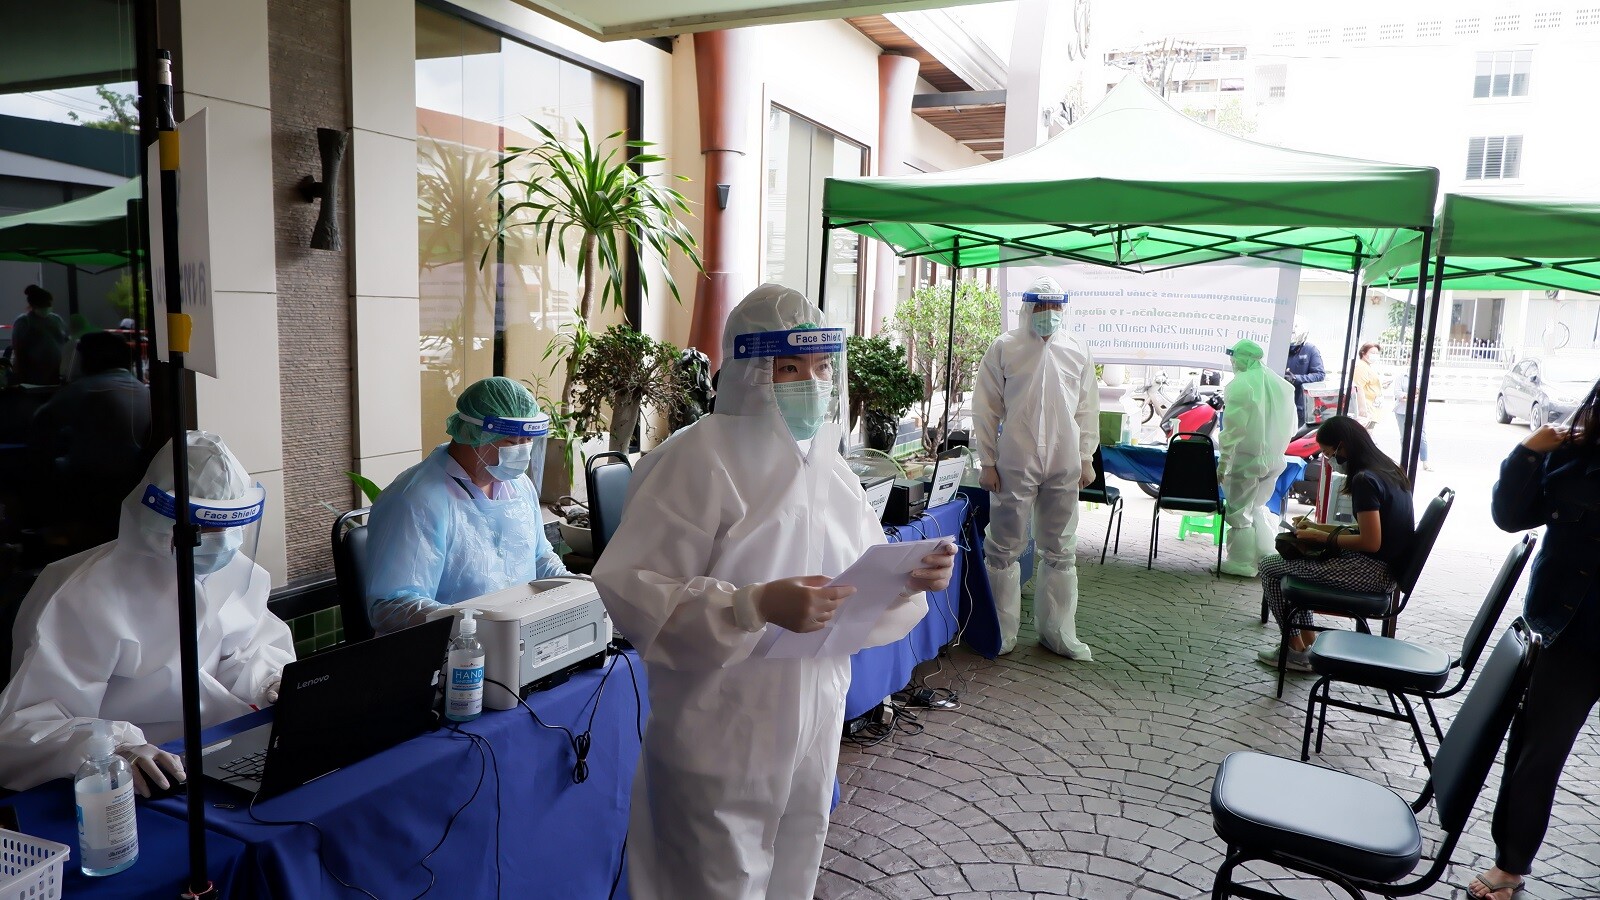 สำนักอนามัย กรุงเทพมหานคร ร่วมกับ โรงพยาบาลซีเมด ลีฟวิ่งแคร์ จัดบริการตรวจเชิงรุกคัดกรองโควิด-19 (Swab) ด้วยวิธีการ RT-PCR ณ โรงแรมไมด้า ดอนเมือง